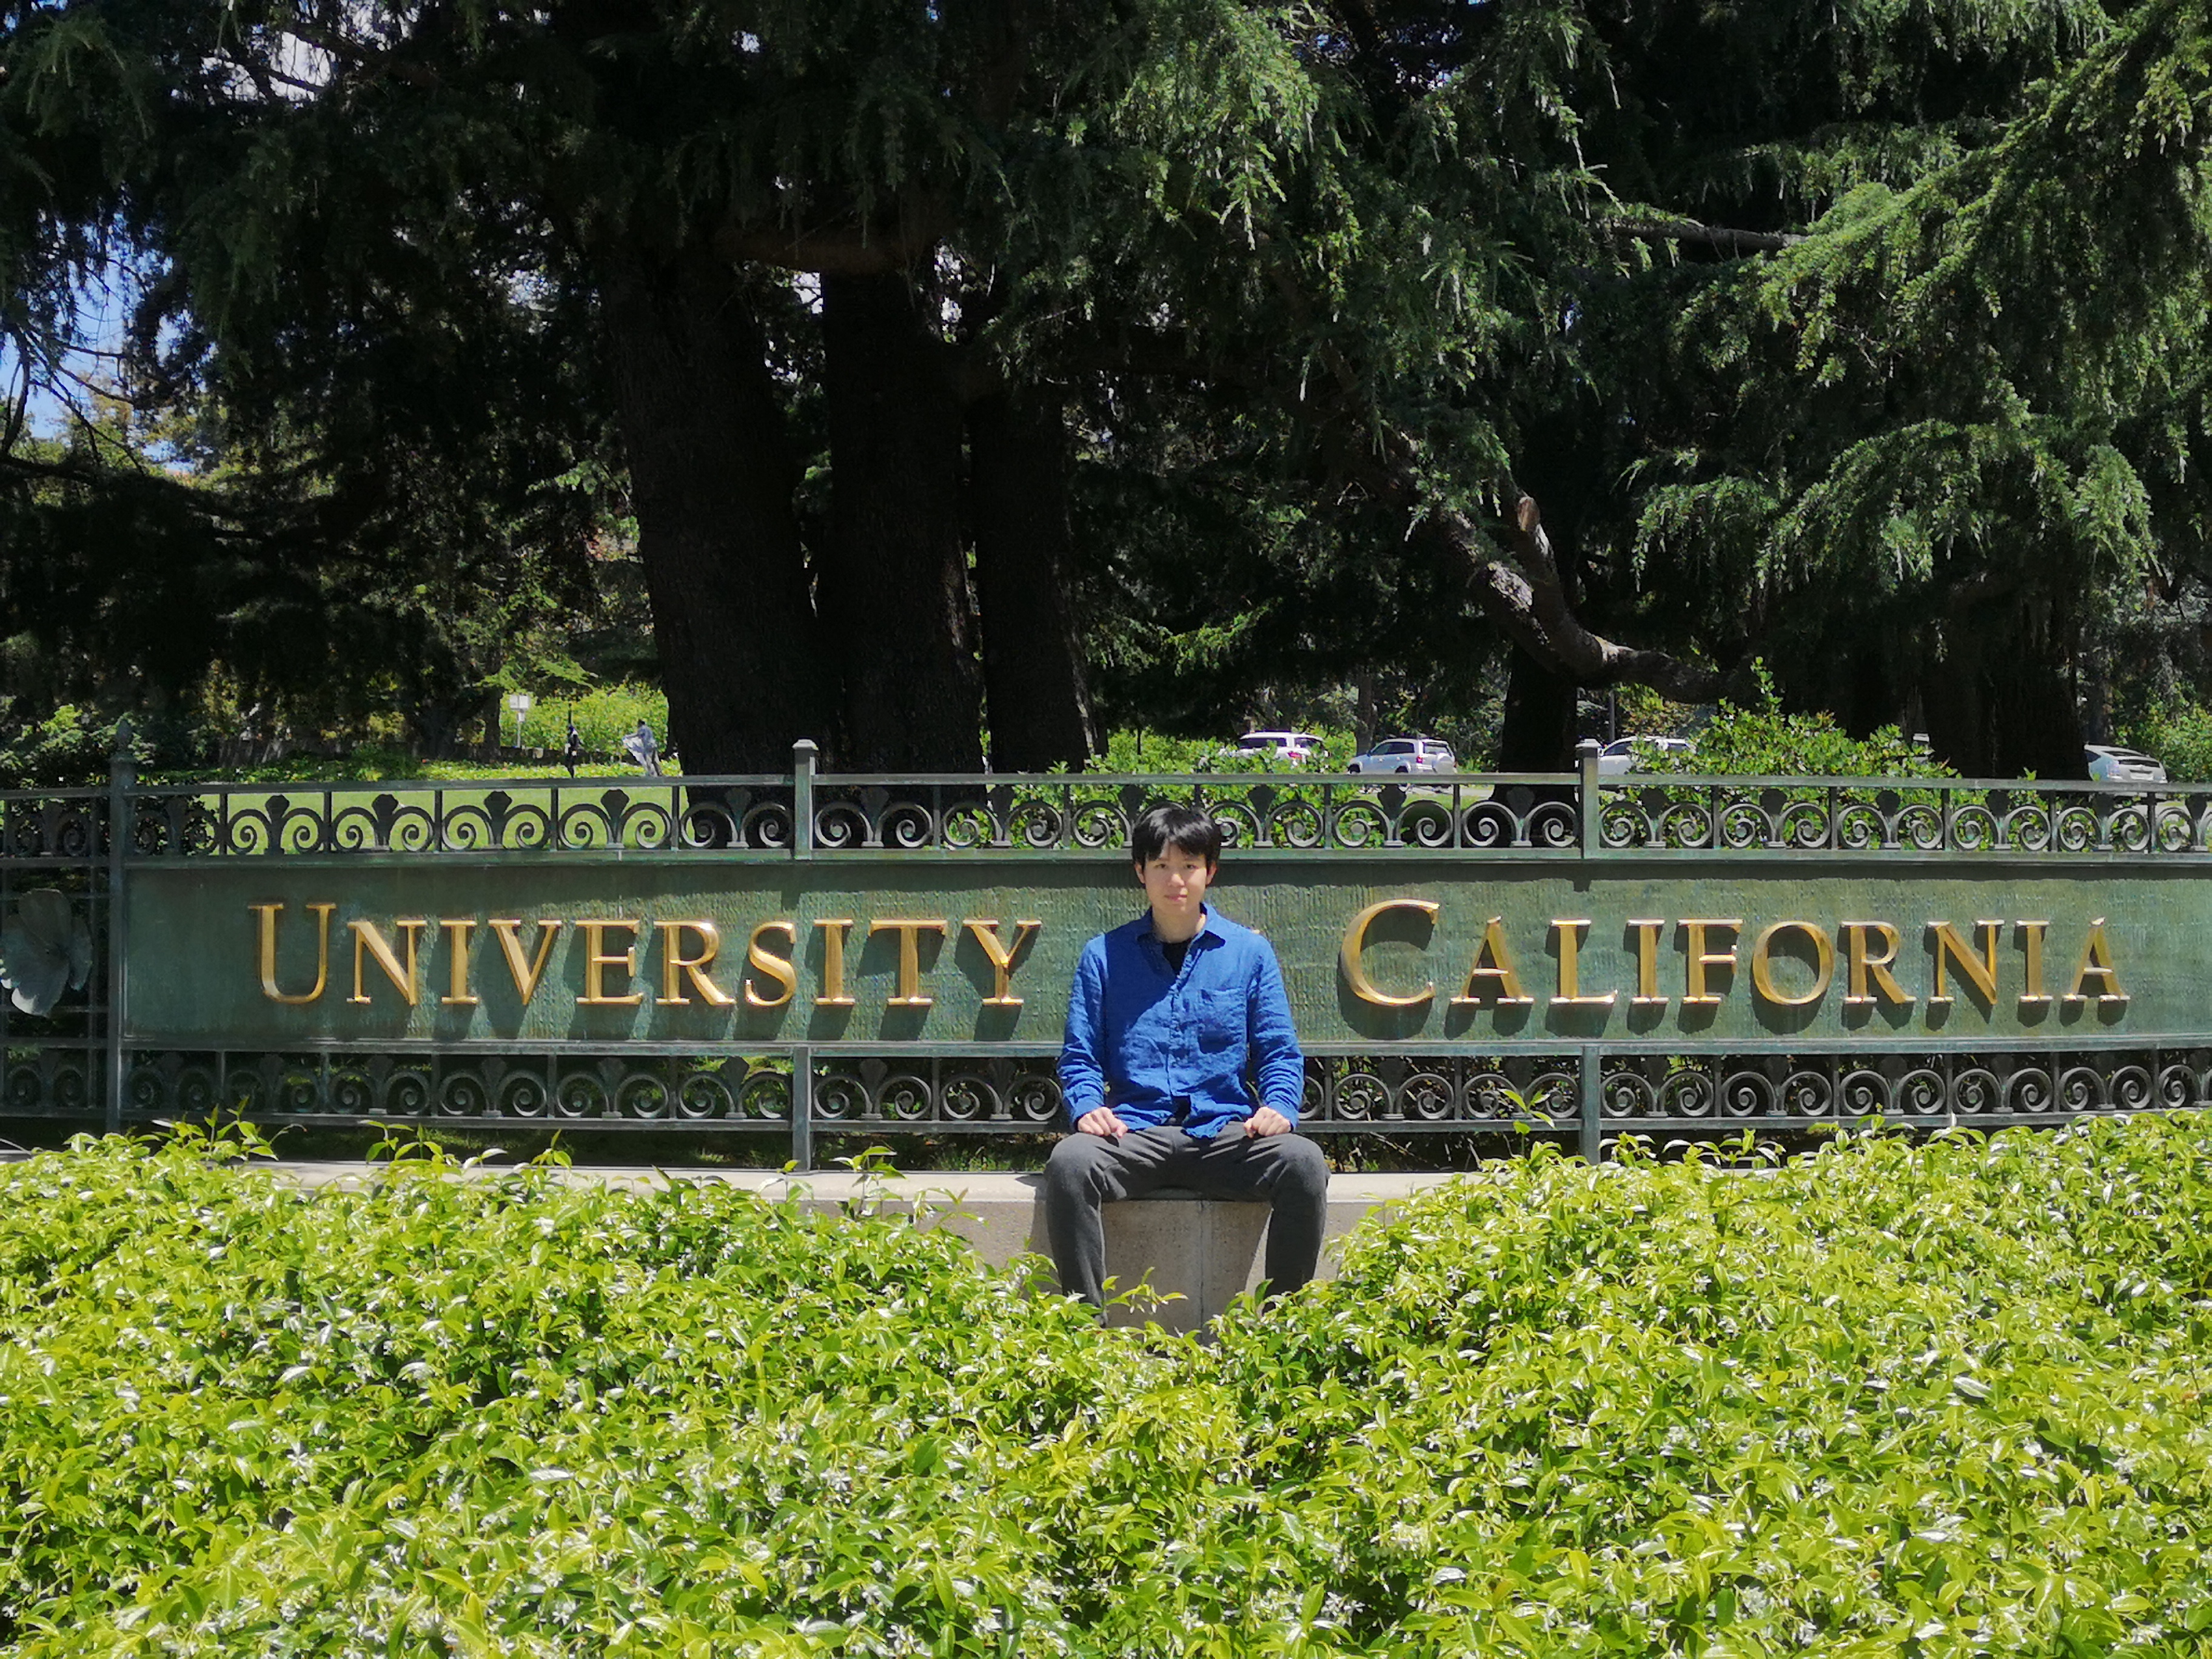 Alumnus Frankie goes on exchange at UC Berkeley in 2020